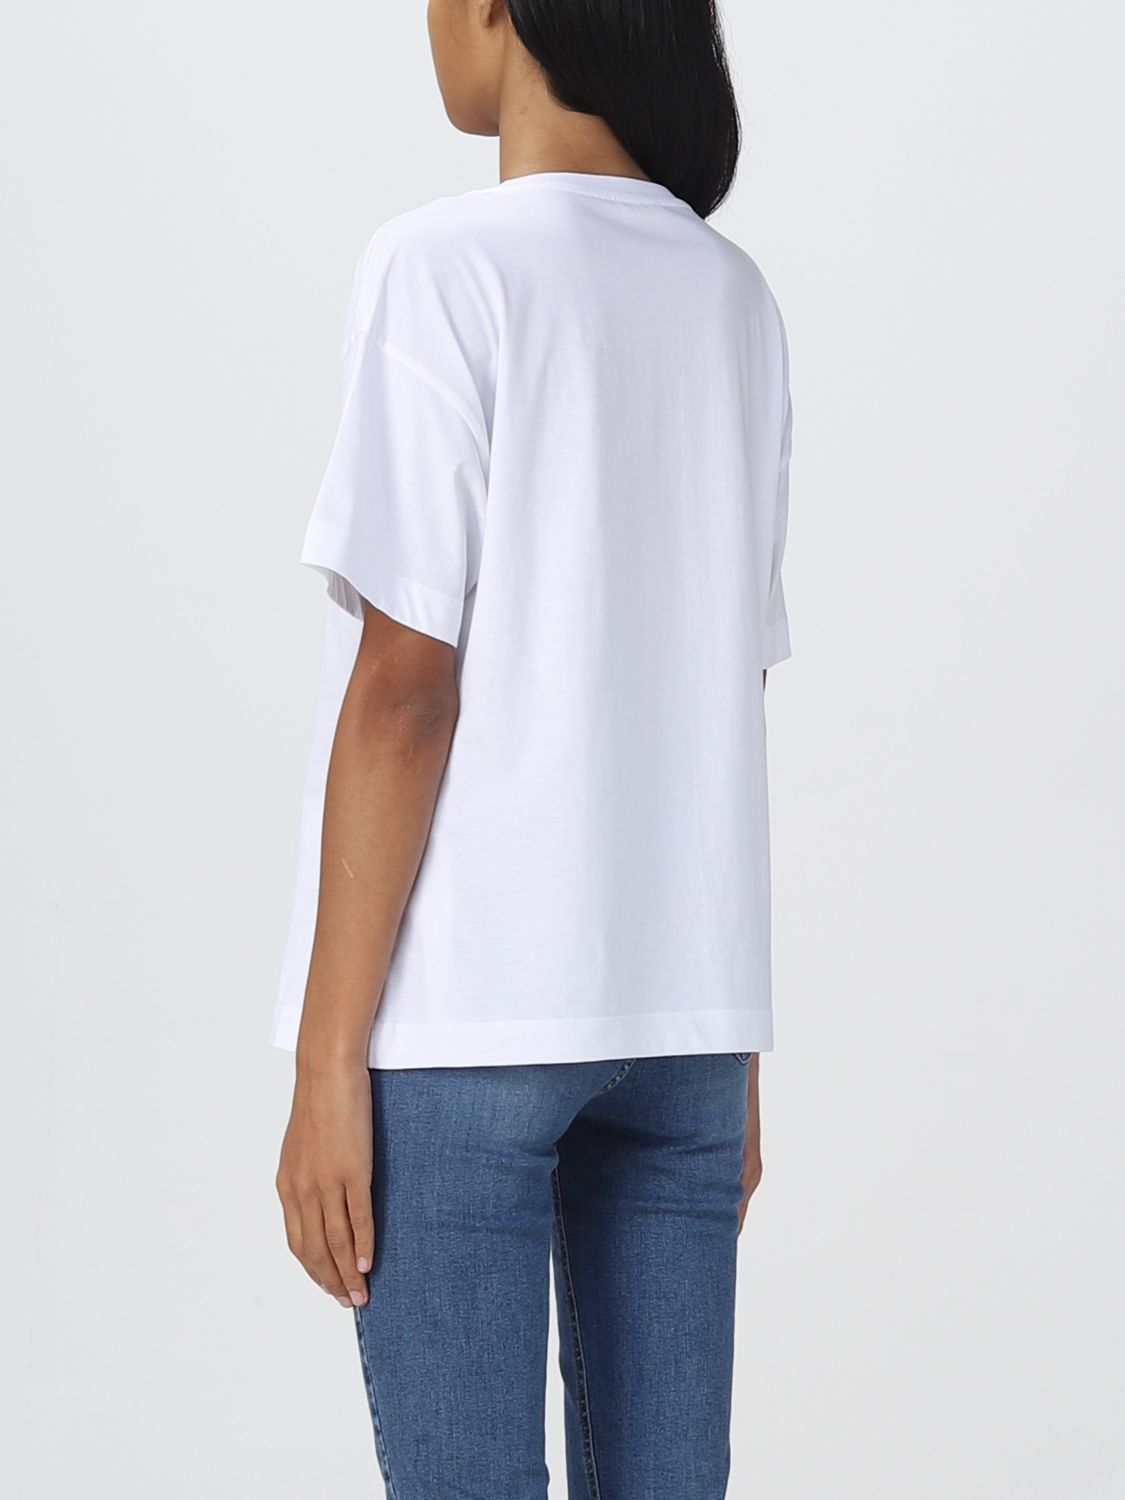 LIU JO: t-shirt for woman - White | Liu Jo t-shirt WF2291J5923 online ...